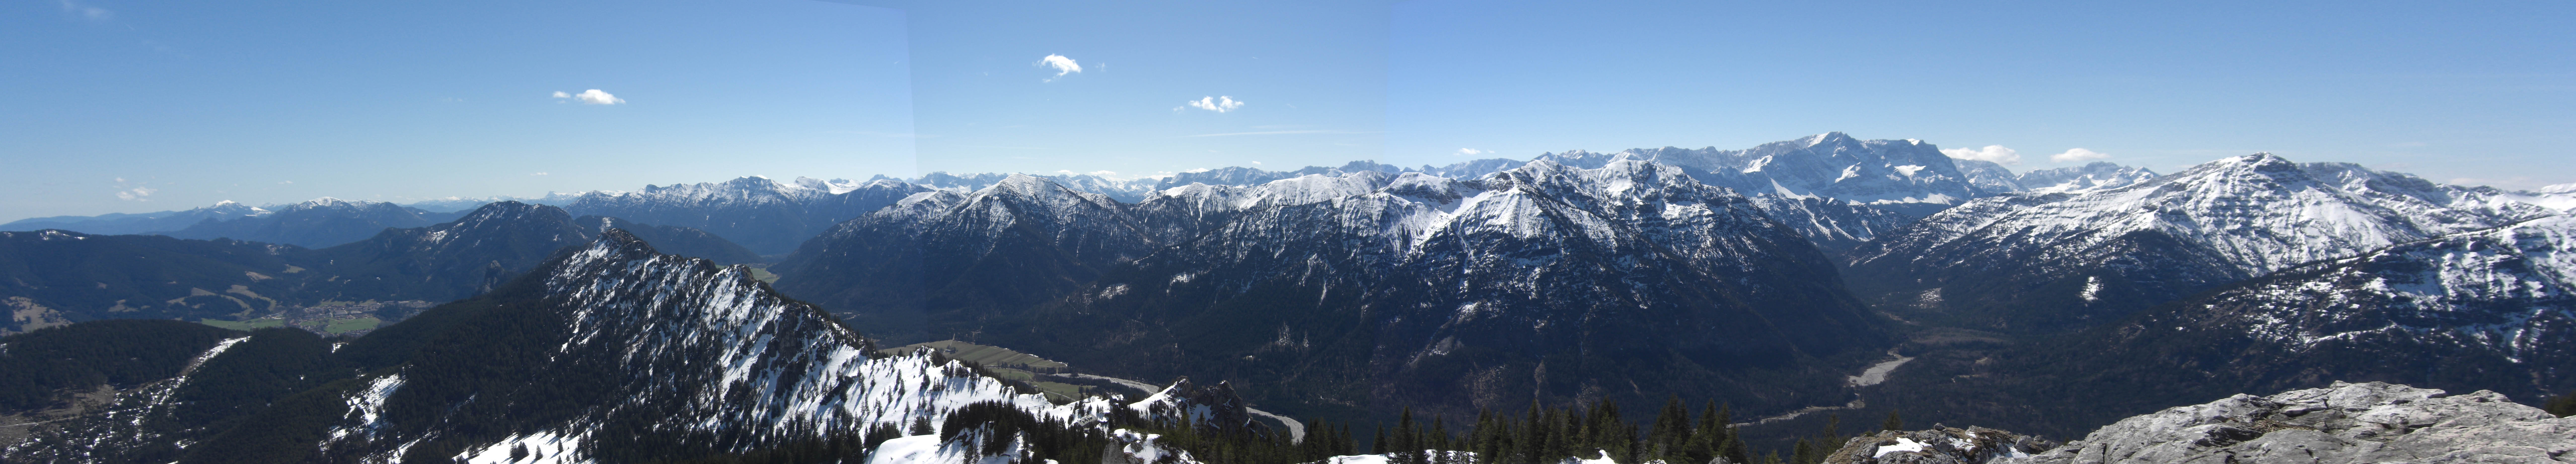 Panorama nach Sden vom Teufelstttkopf